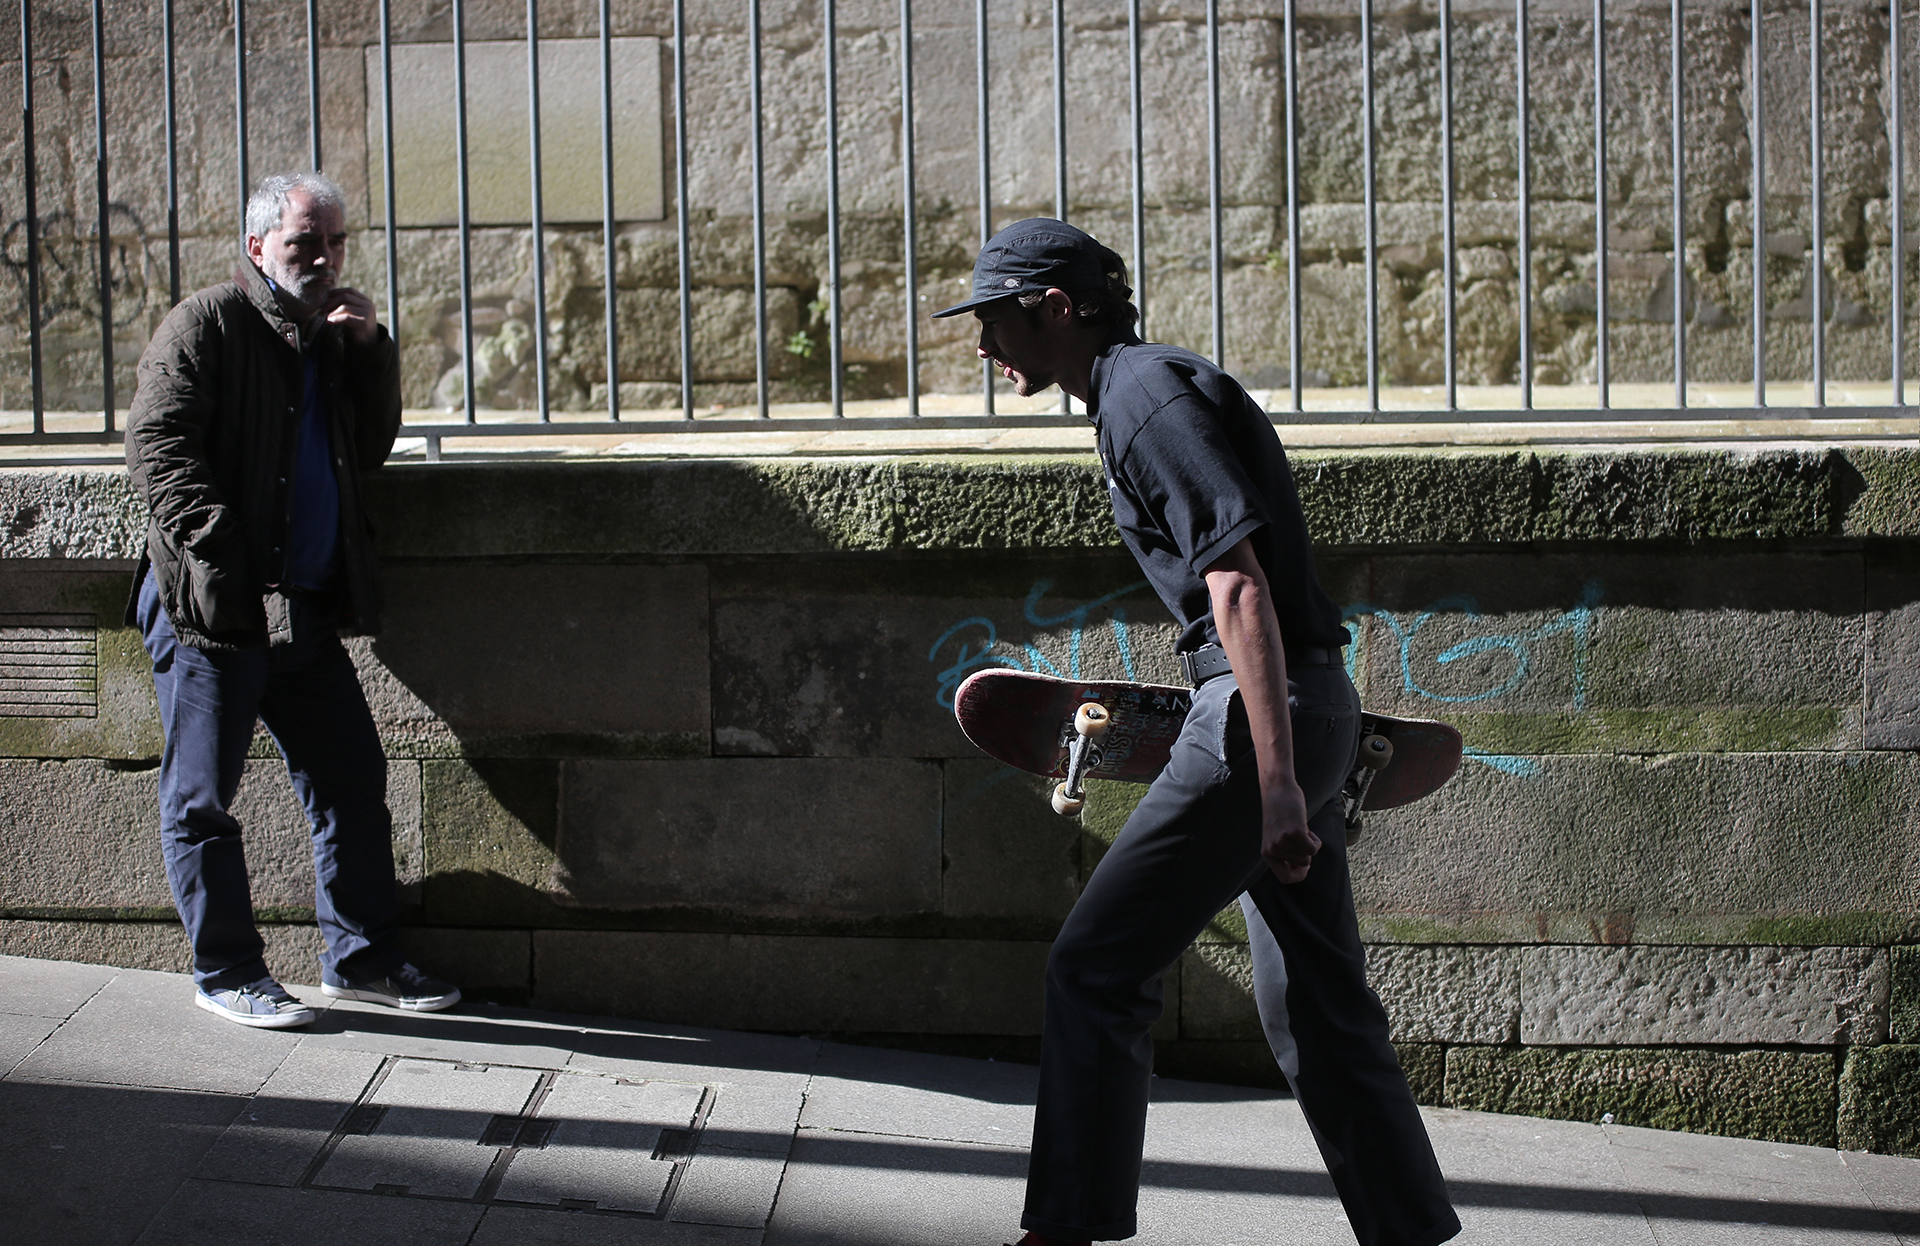 Skateboarding_Life_Renato_Lainho_com (15b)